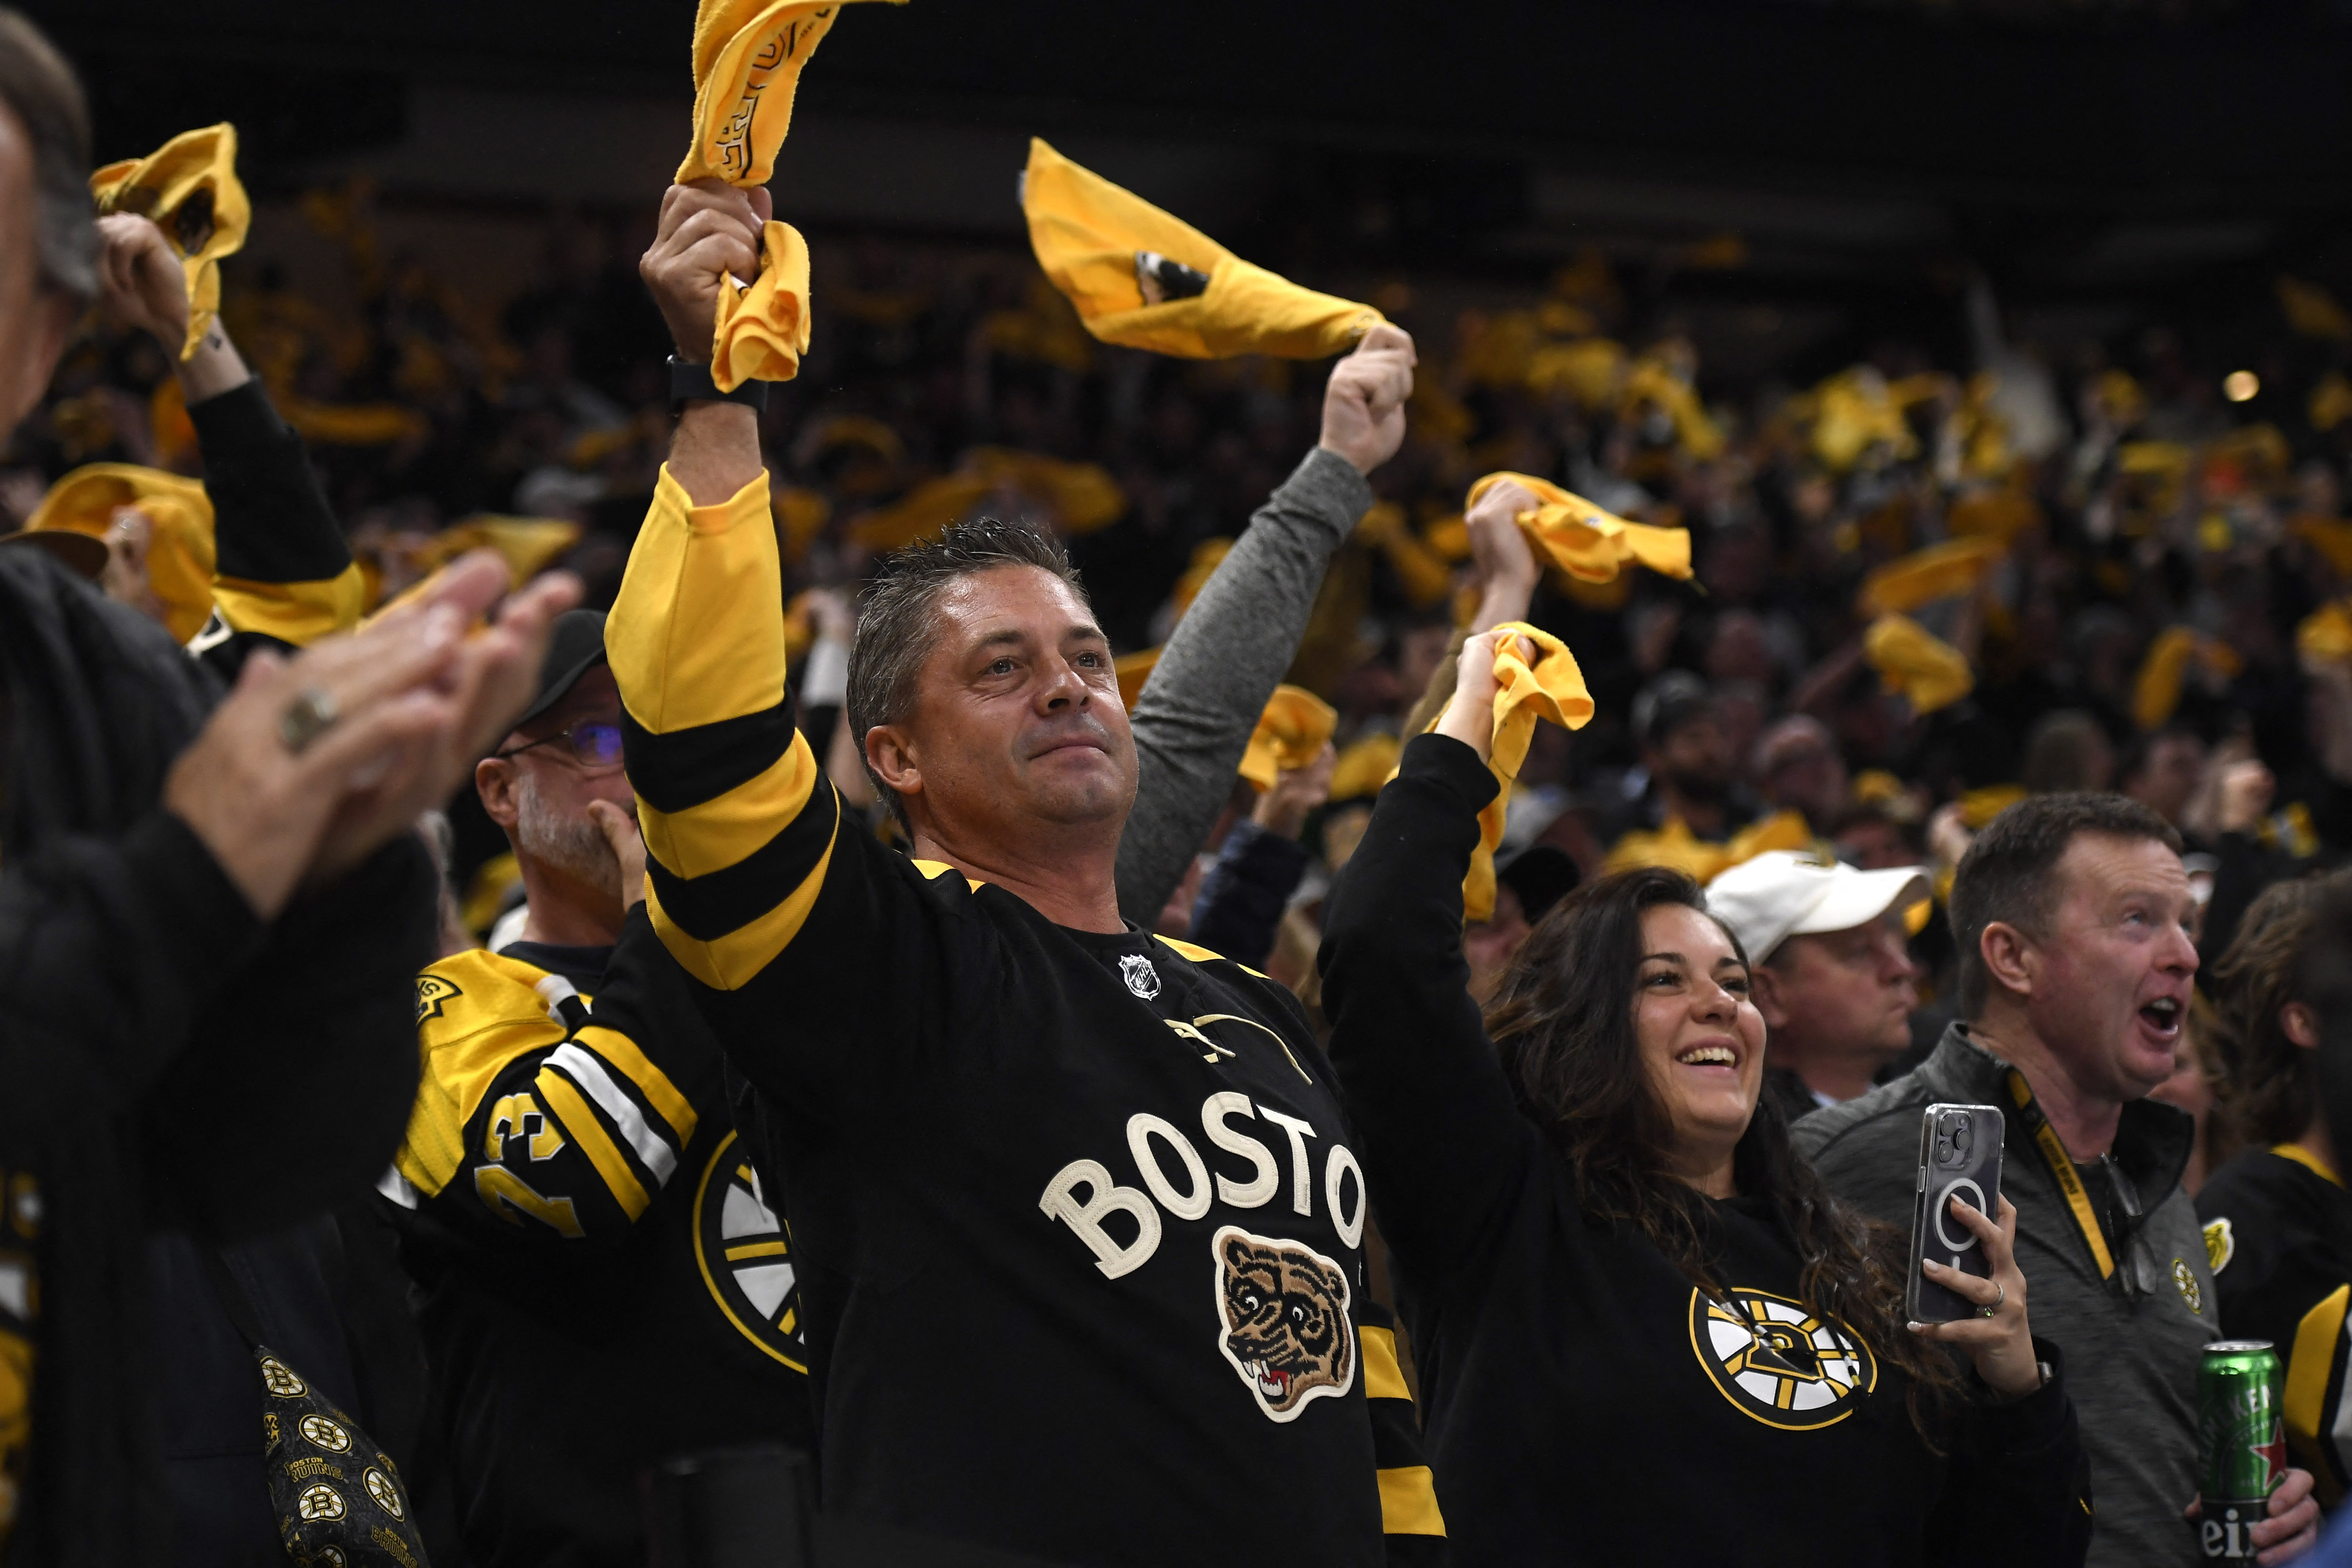 NHL: David Pastrnak scores outrageous goal but Florida Panthers stun Boston  Bruins